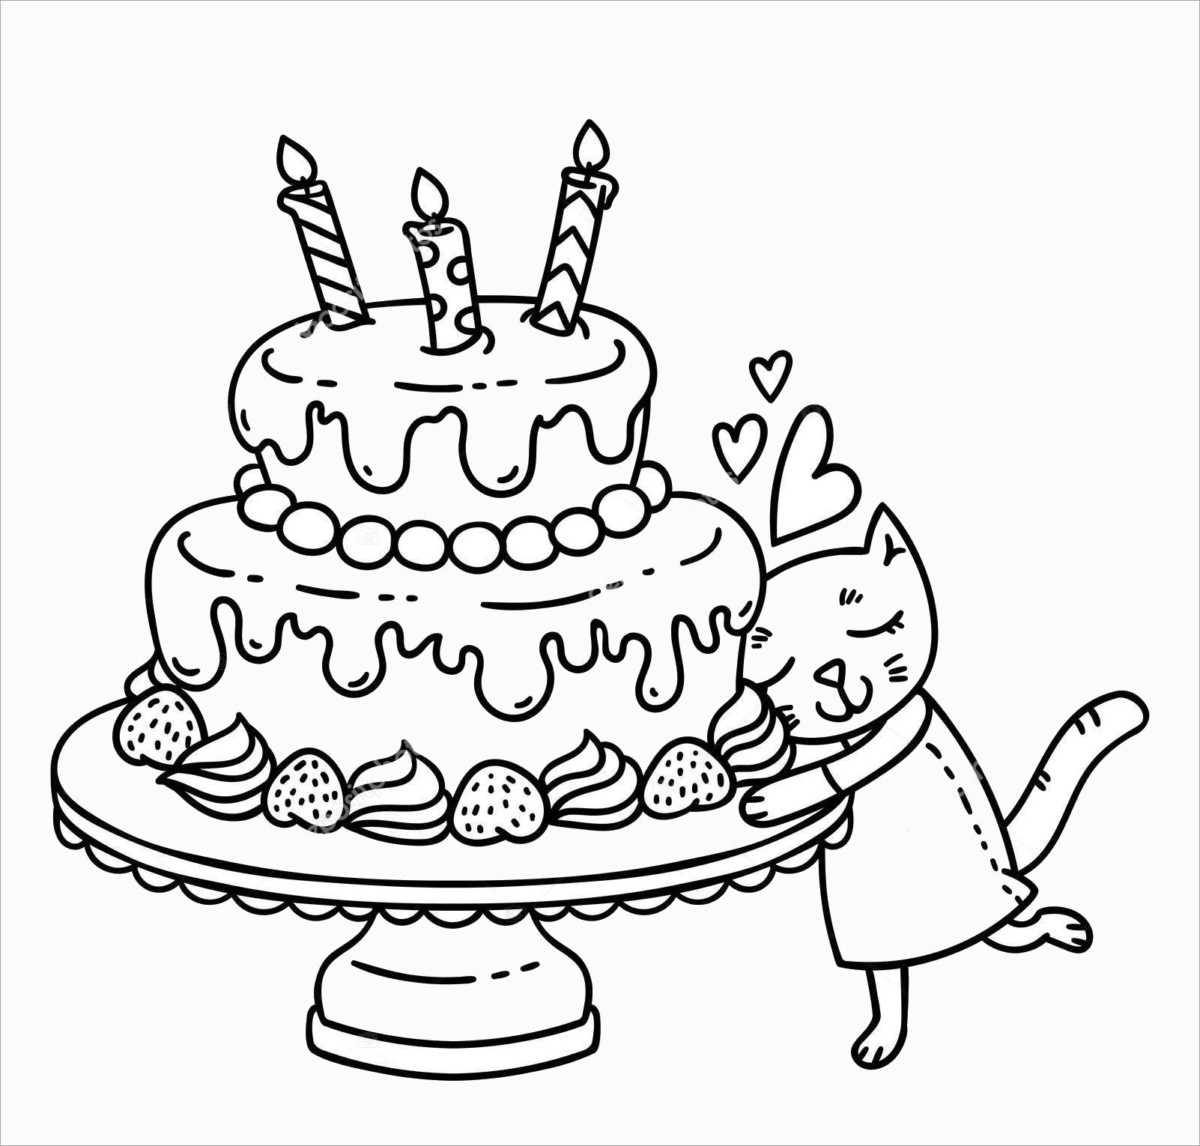 Tuyển tập tranh tô màu bánh sinh nhật đẹp nhất dành cho các bé